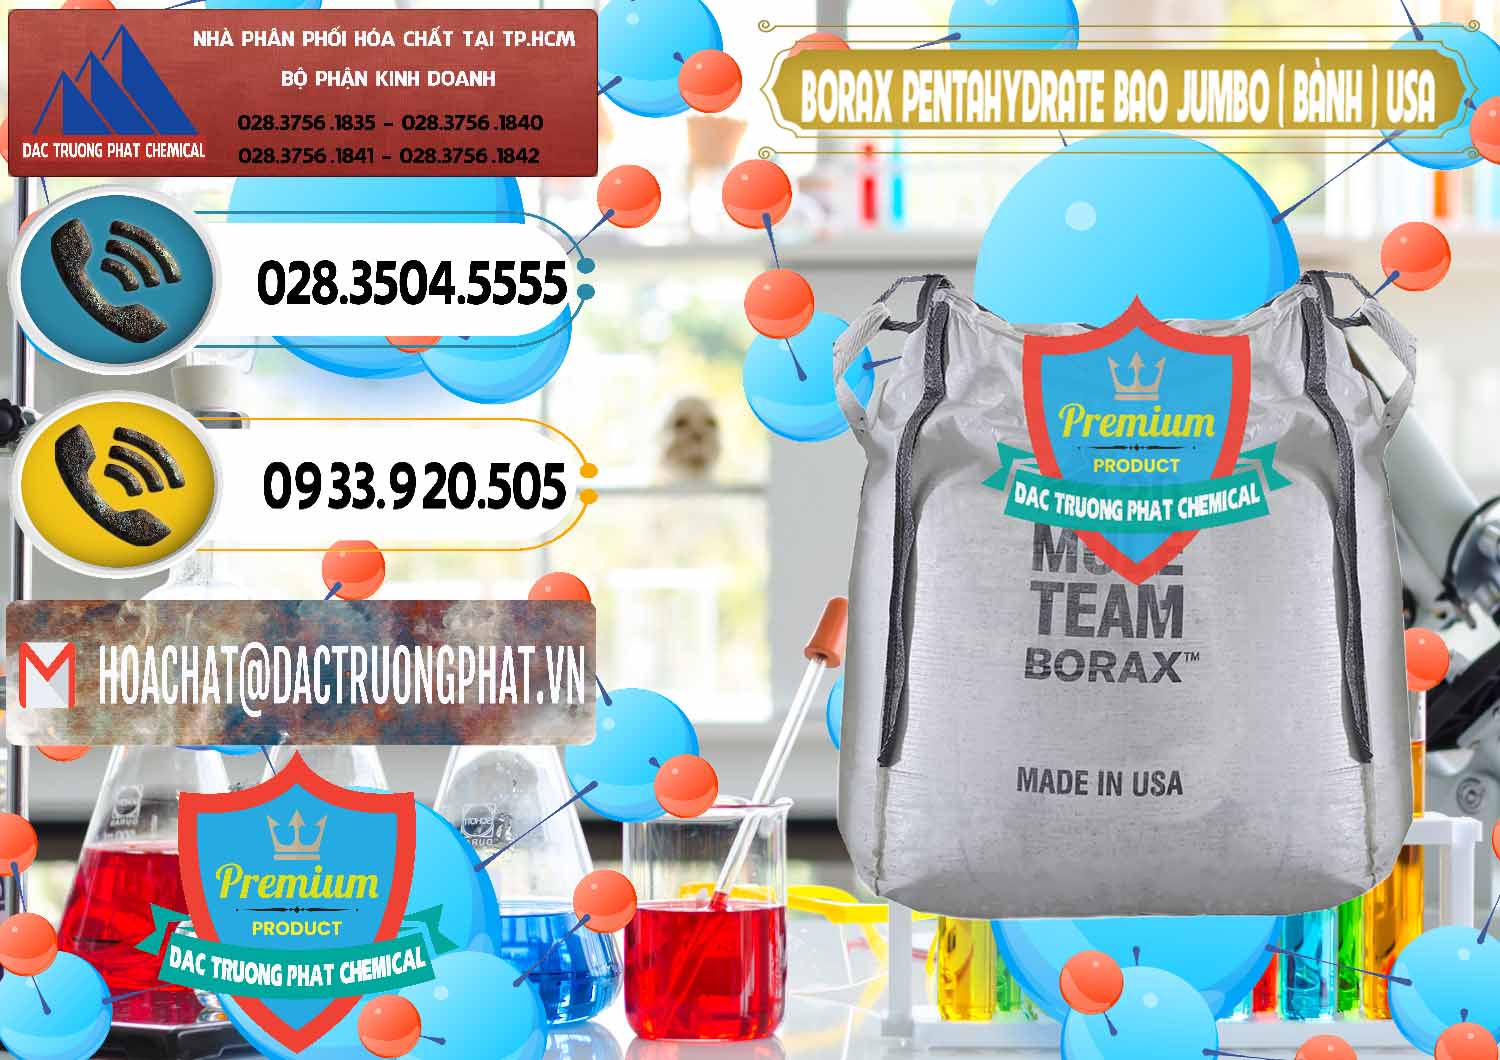 Nơi phân phối _ bán Borax Pentahydrate Bao Jumbo ( Bành ) Mule 20 Team Mỹ Usa - 0278 - Công ty chuyên cung cấp _ kinh doanh hóa chất tại TP.HCM - hoachatdetnhuom.vn